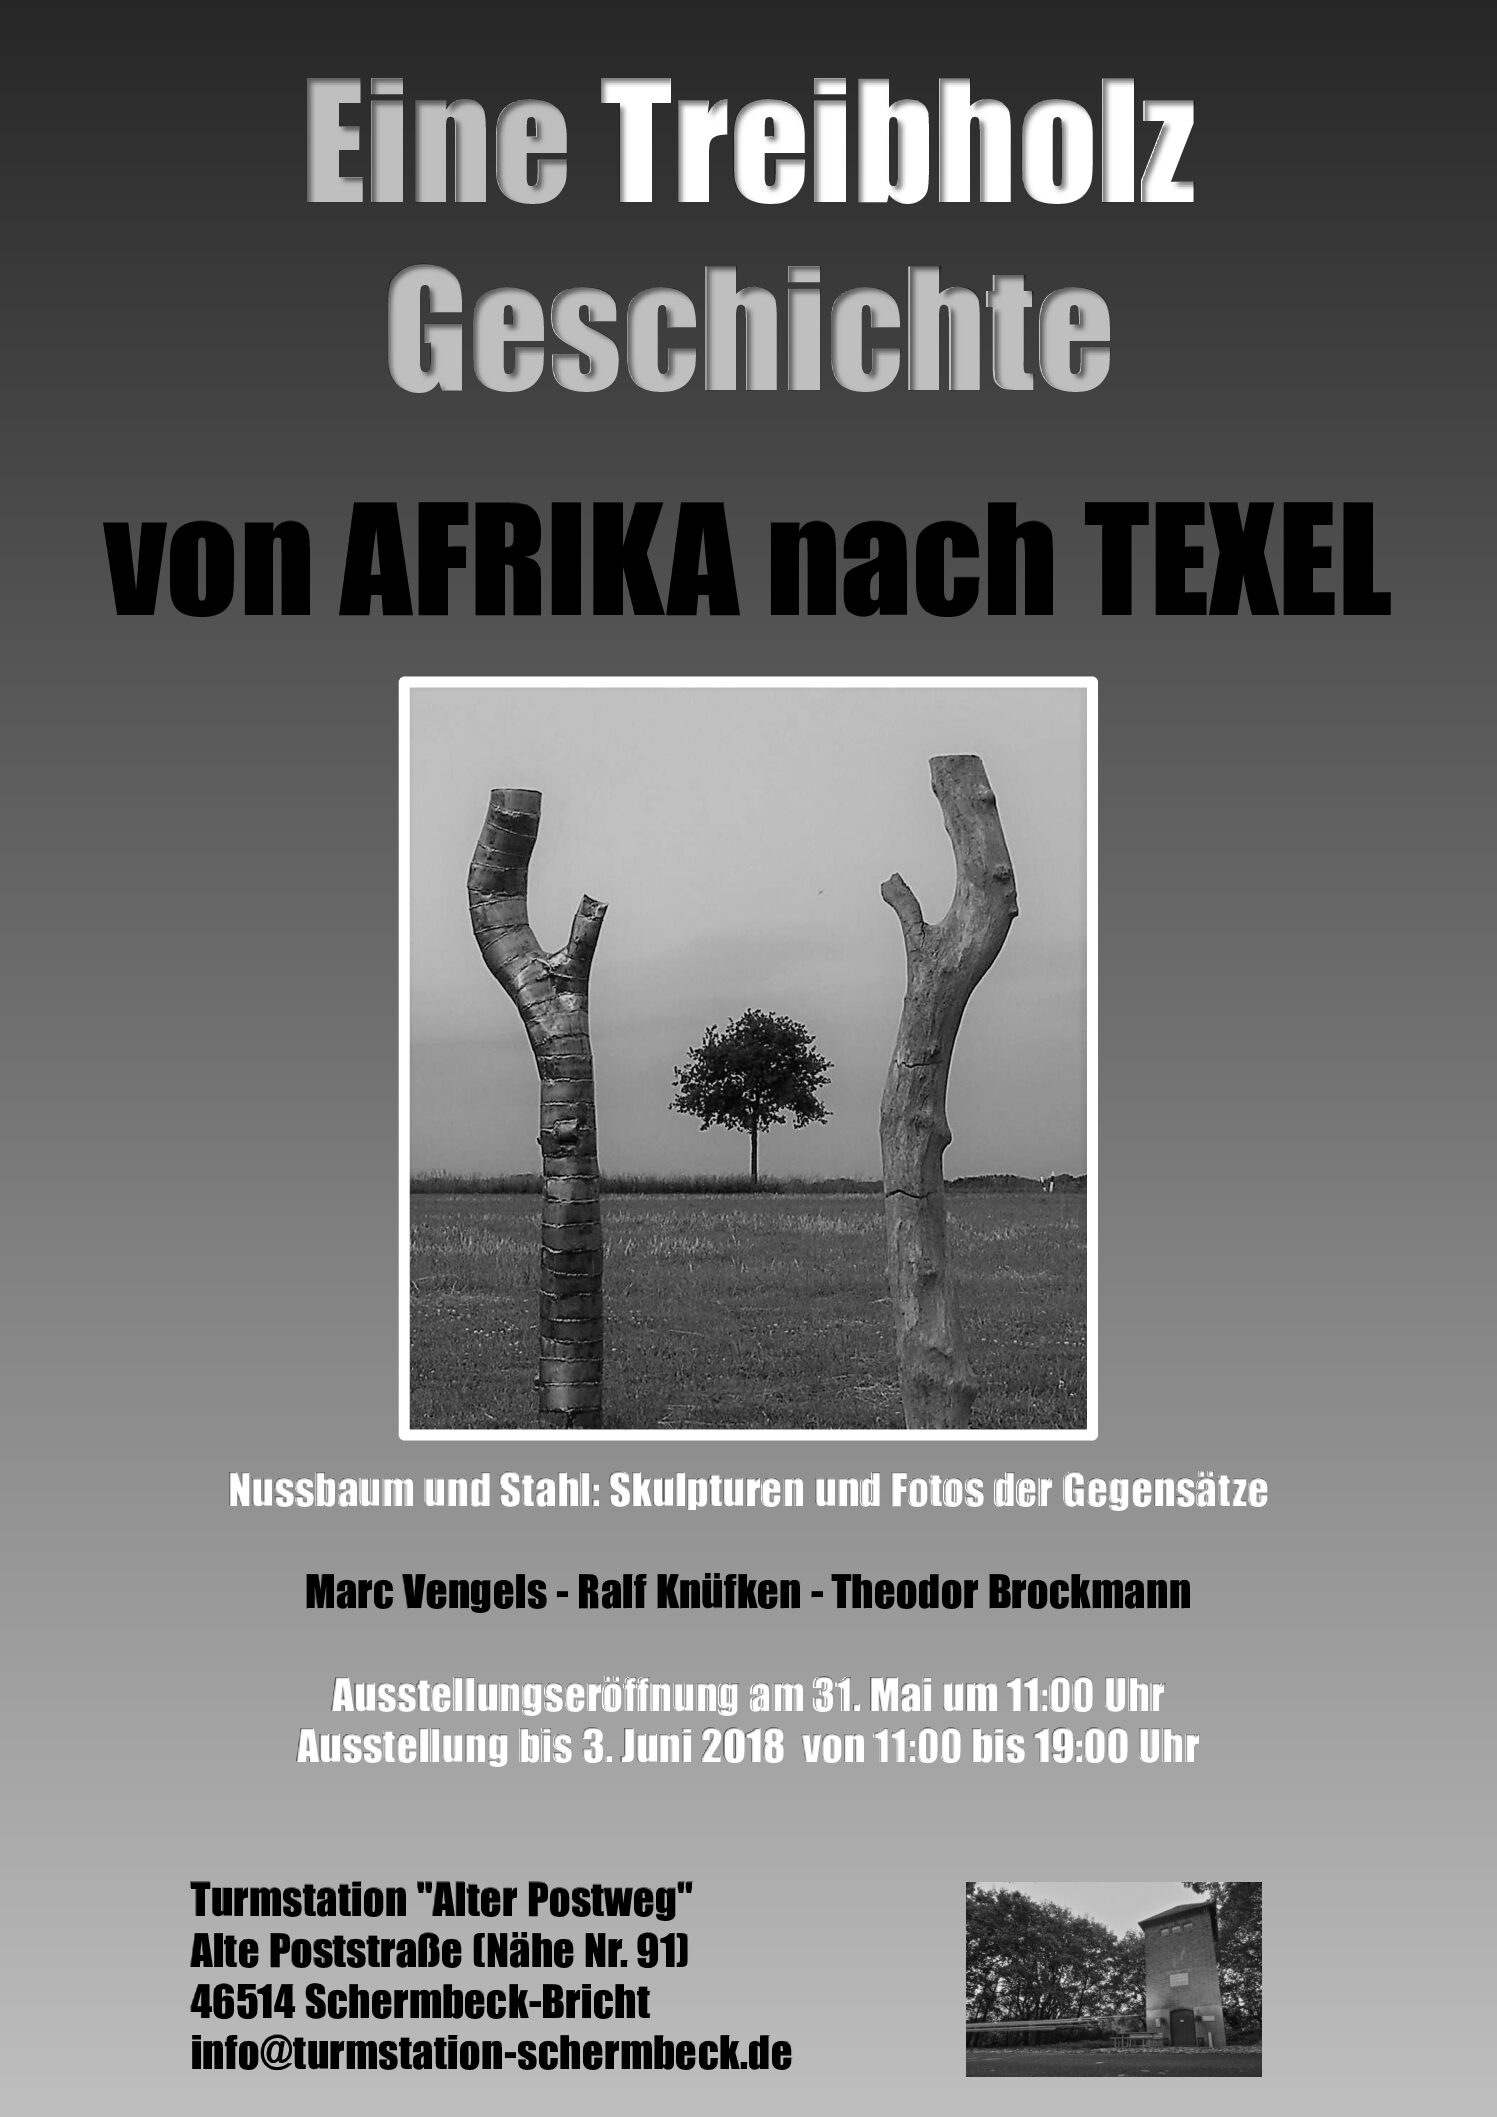 Kunstausstellung: Eine Treibholz Geschichte von Afrika nach Texel